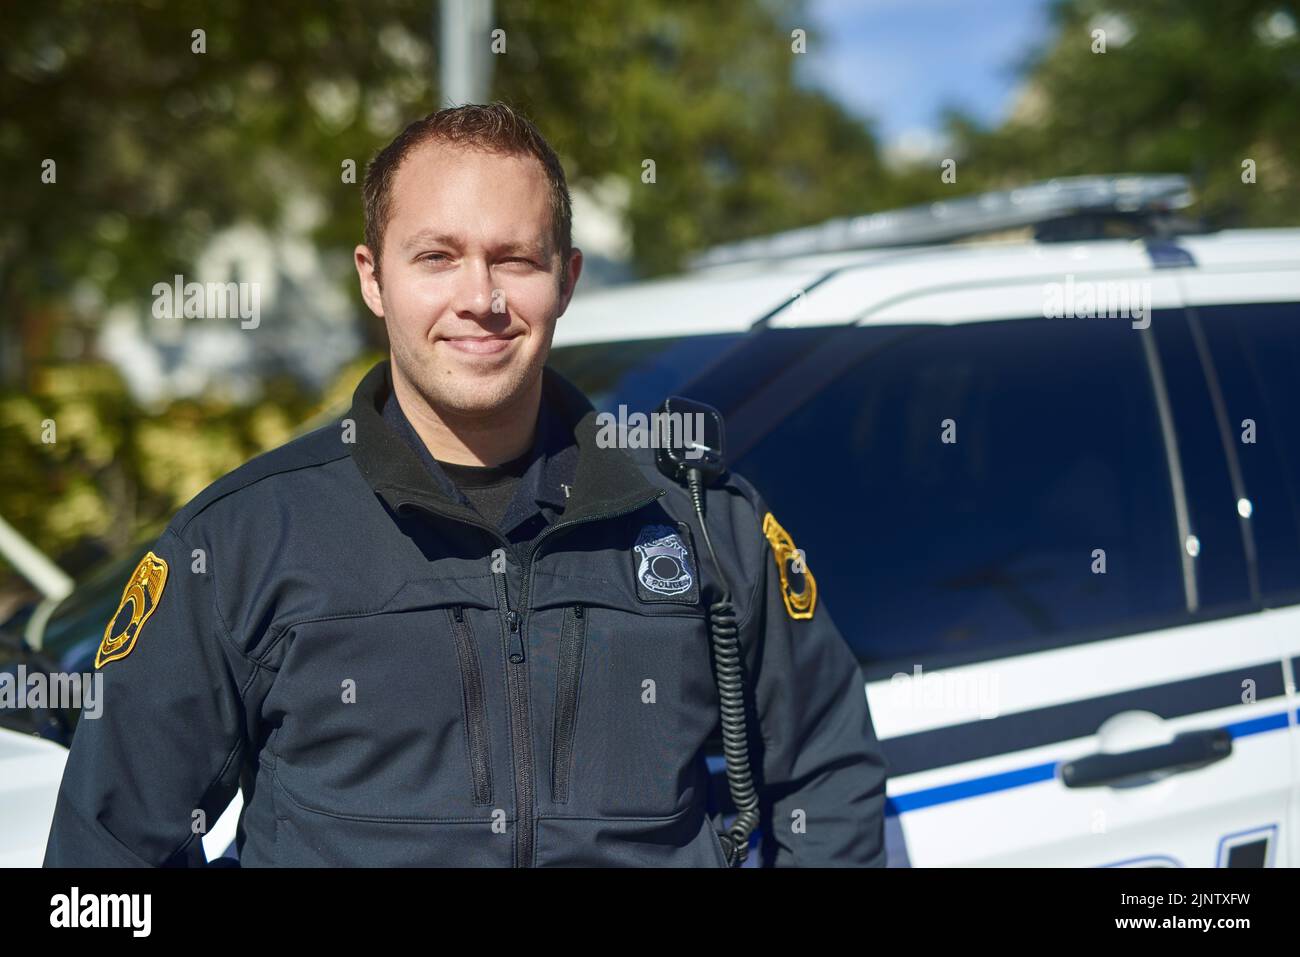 Ich habe einen guten Tag im Patrouillendienst. Beschnittenes Porträt eines hübschen jungen Polizisten auf Patrouille. Stockfoto